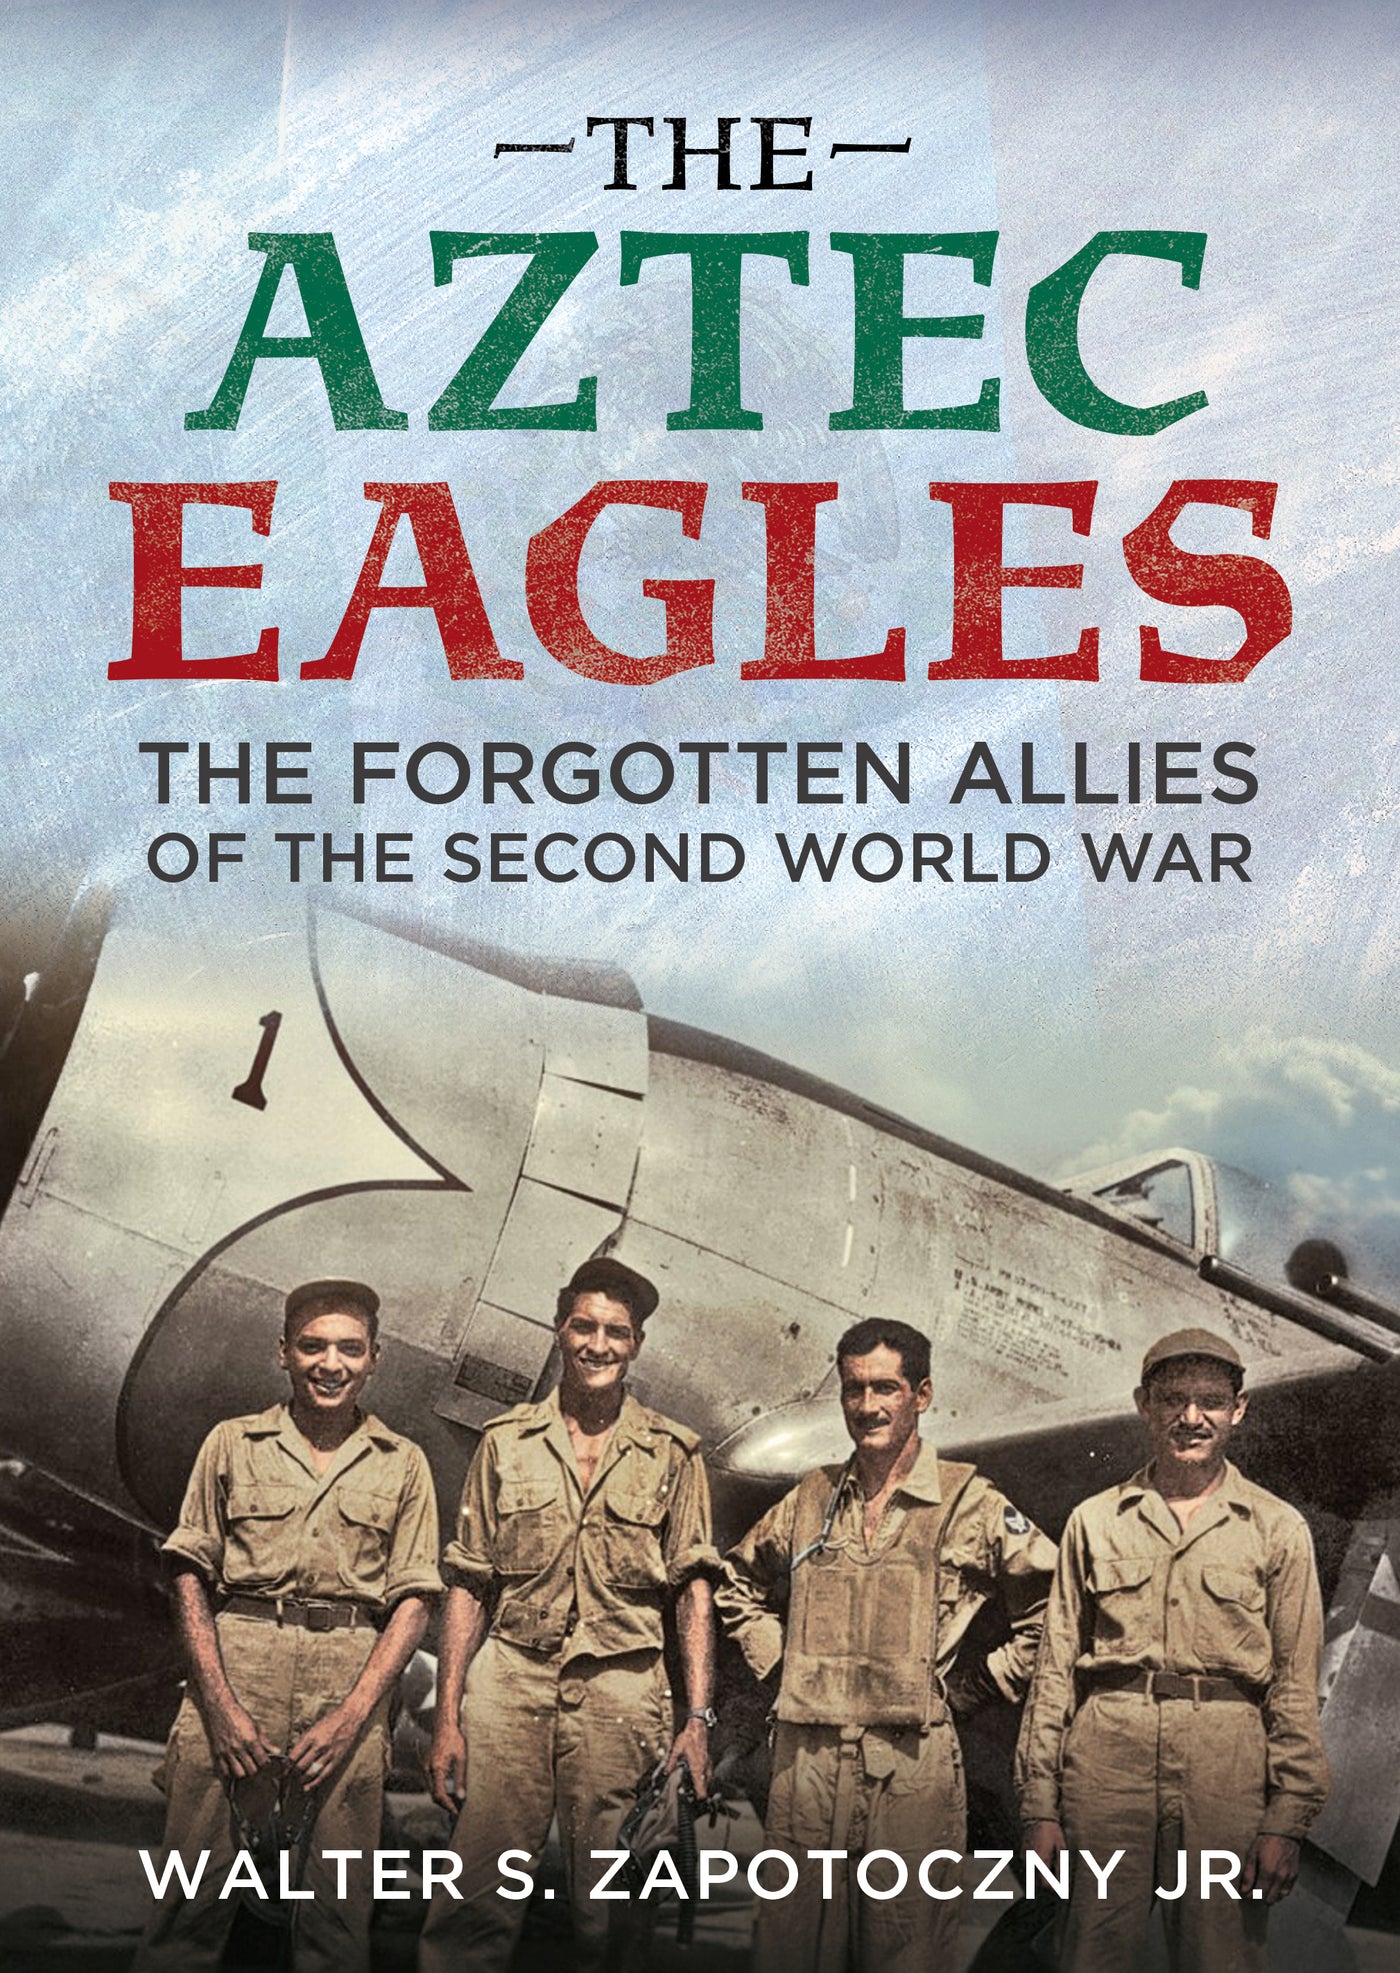 The Aztec Eagles